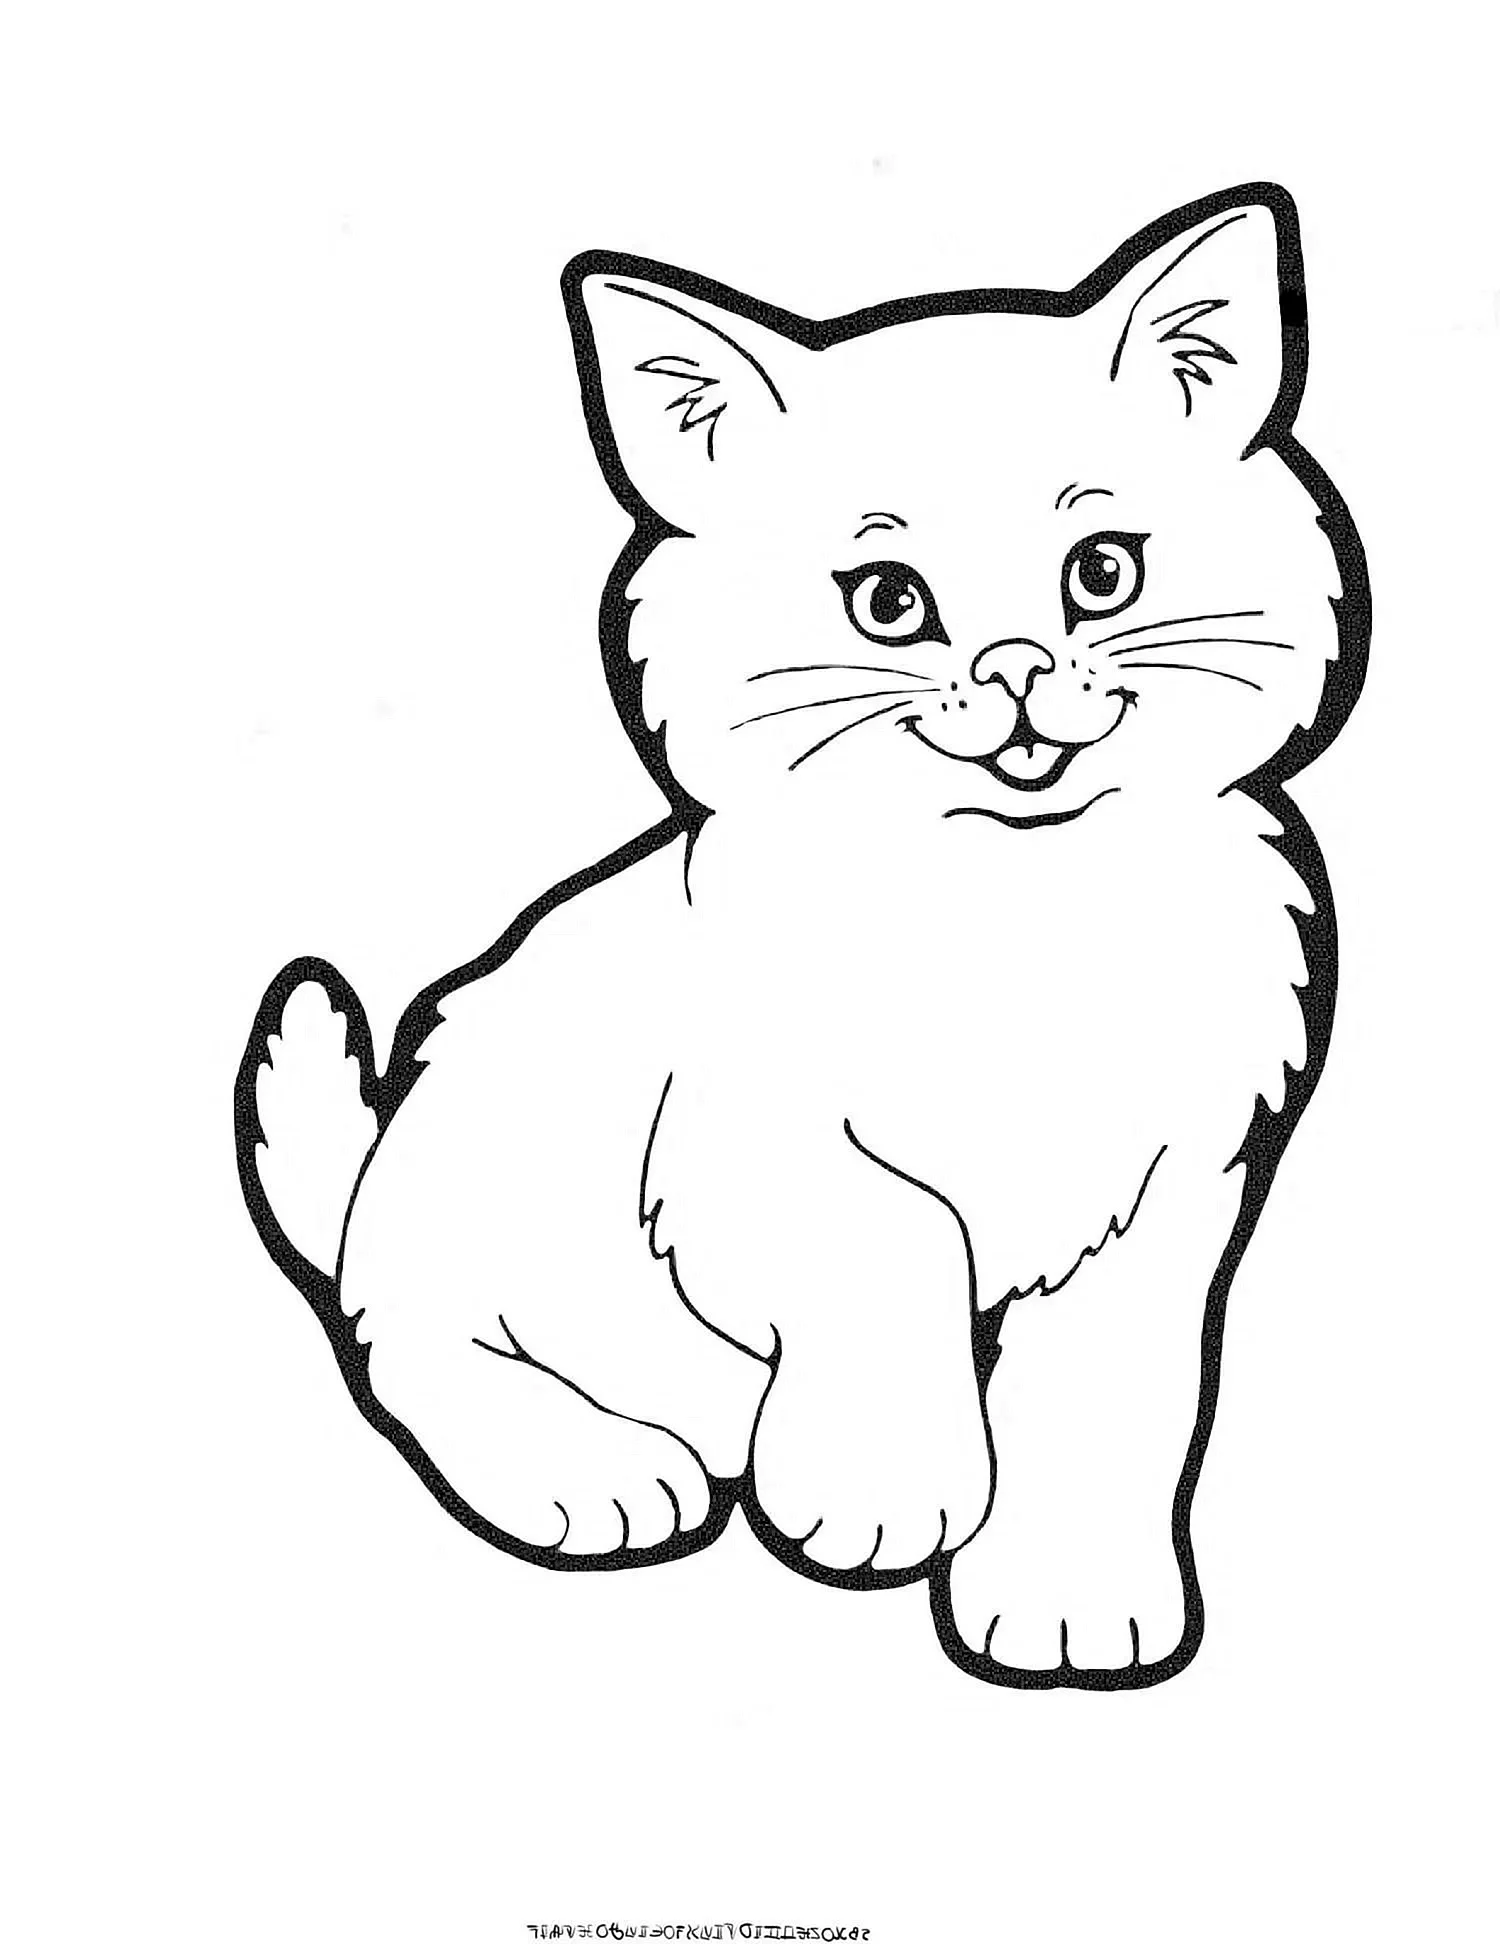 Рисунок котенка для раскрашивания